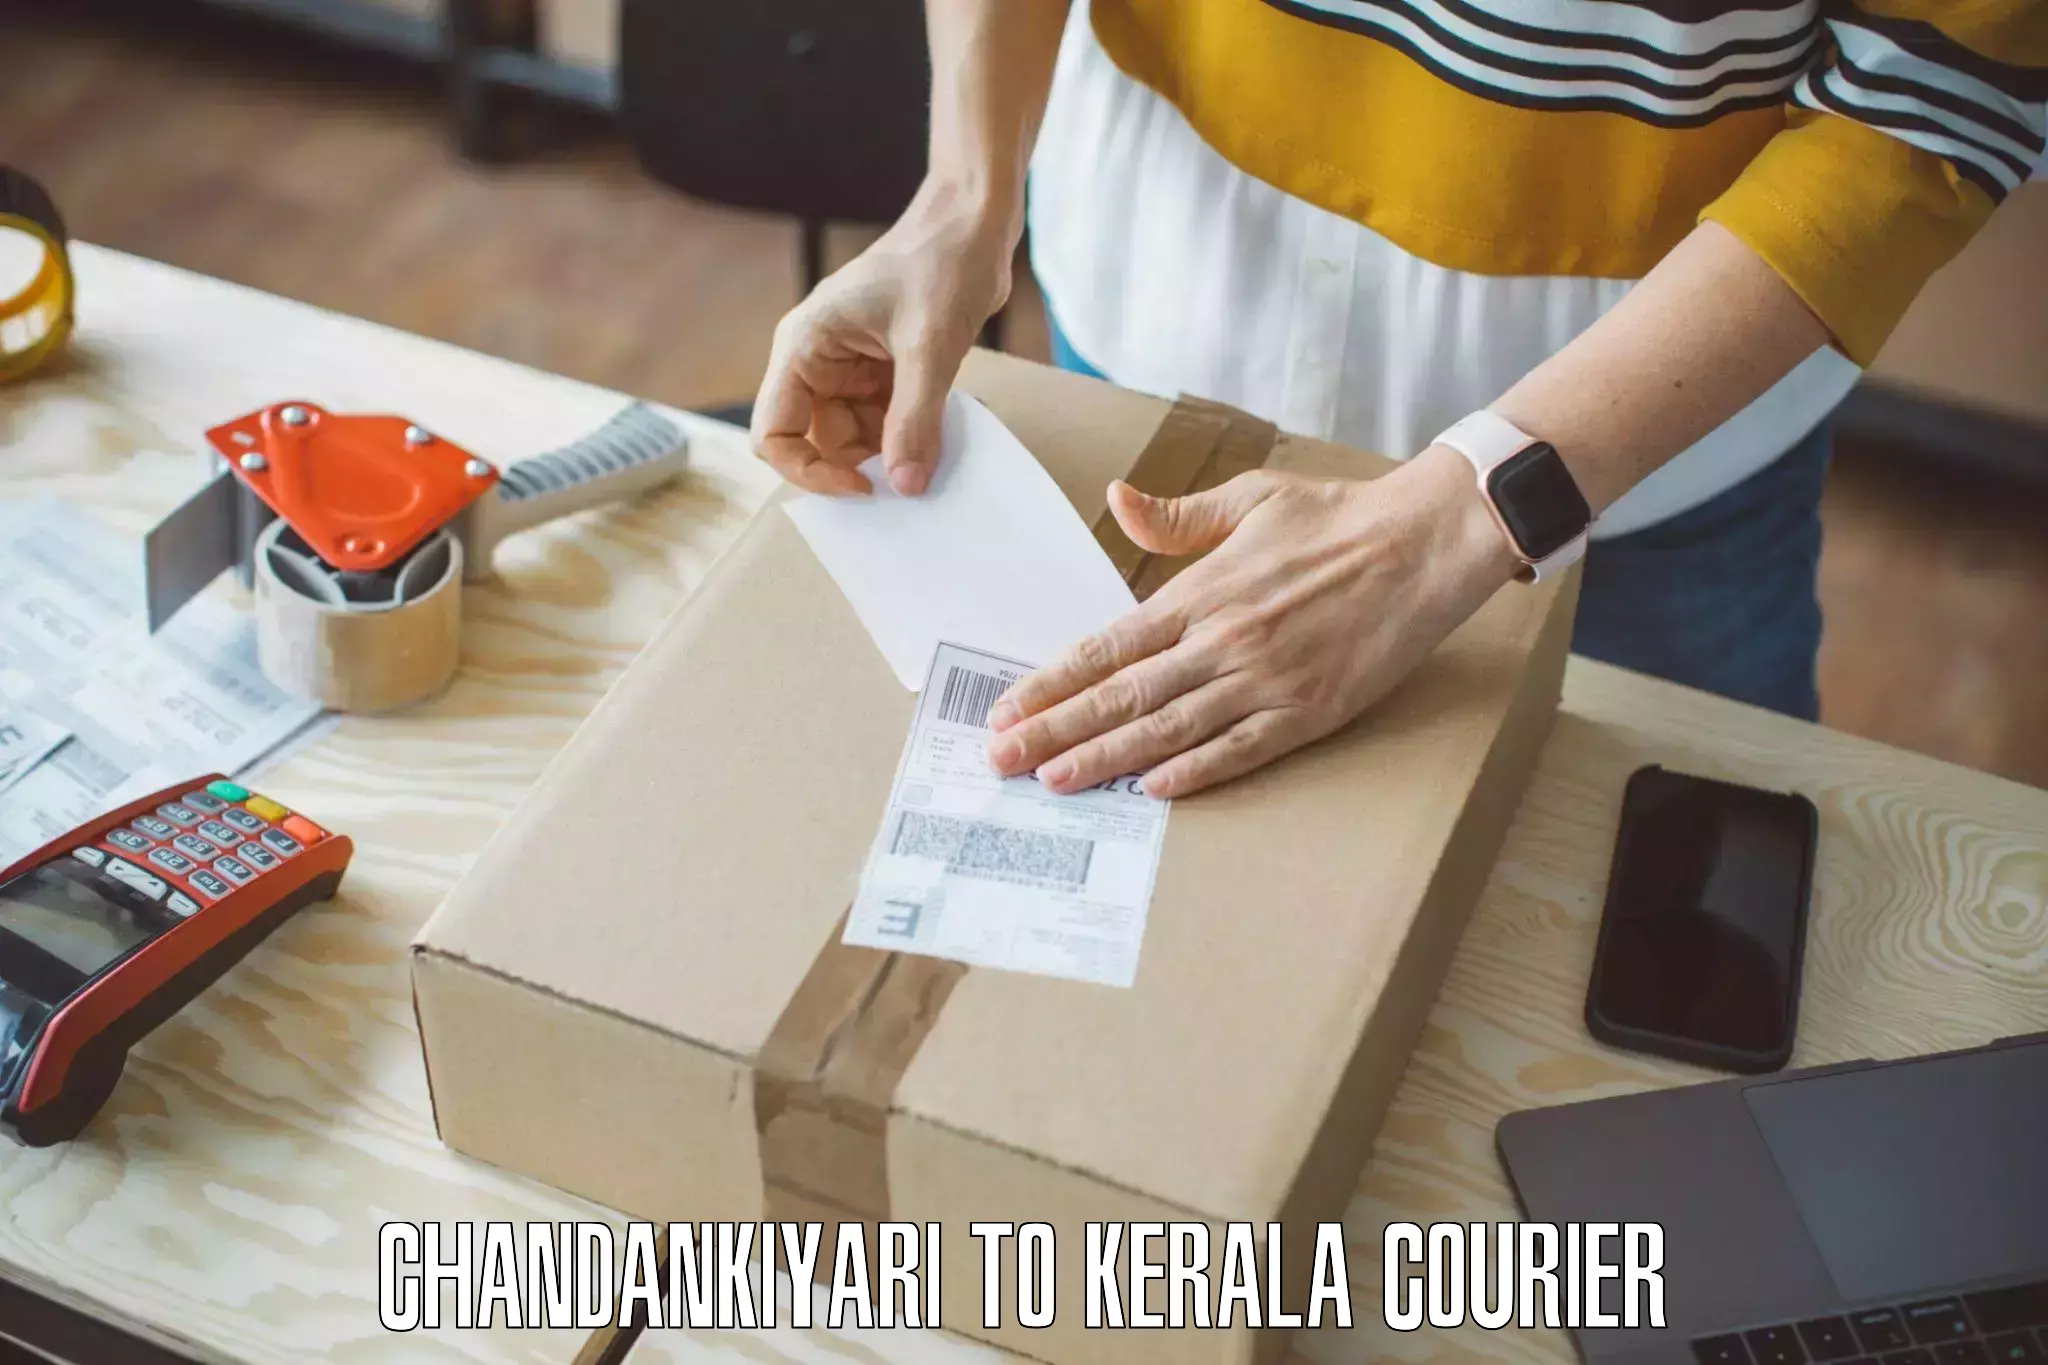 Home goods movers in Chandankiyari to Iritty